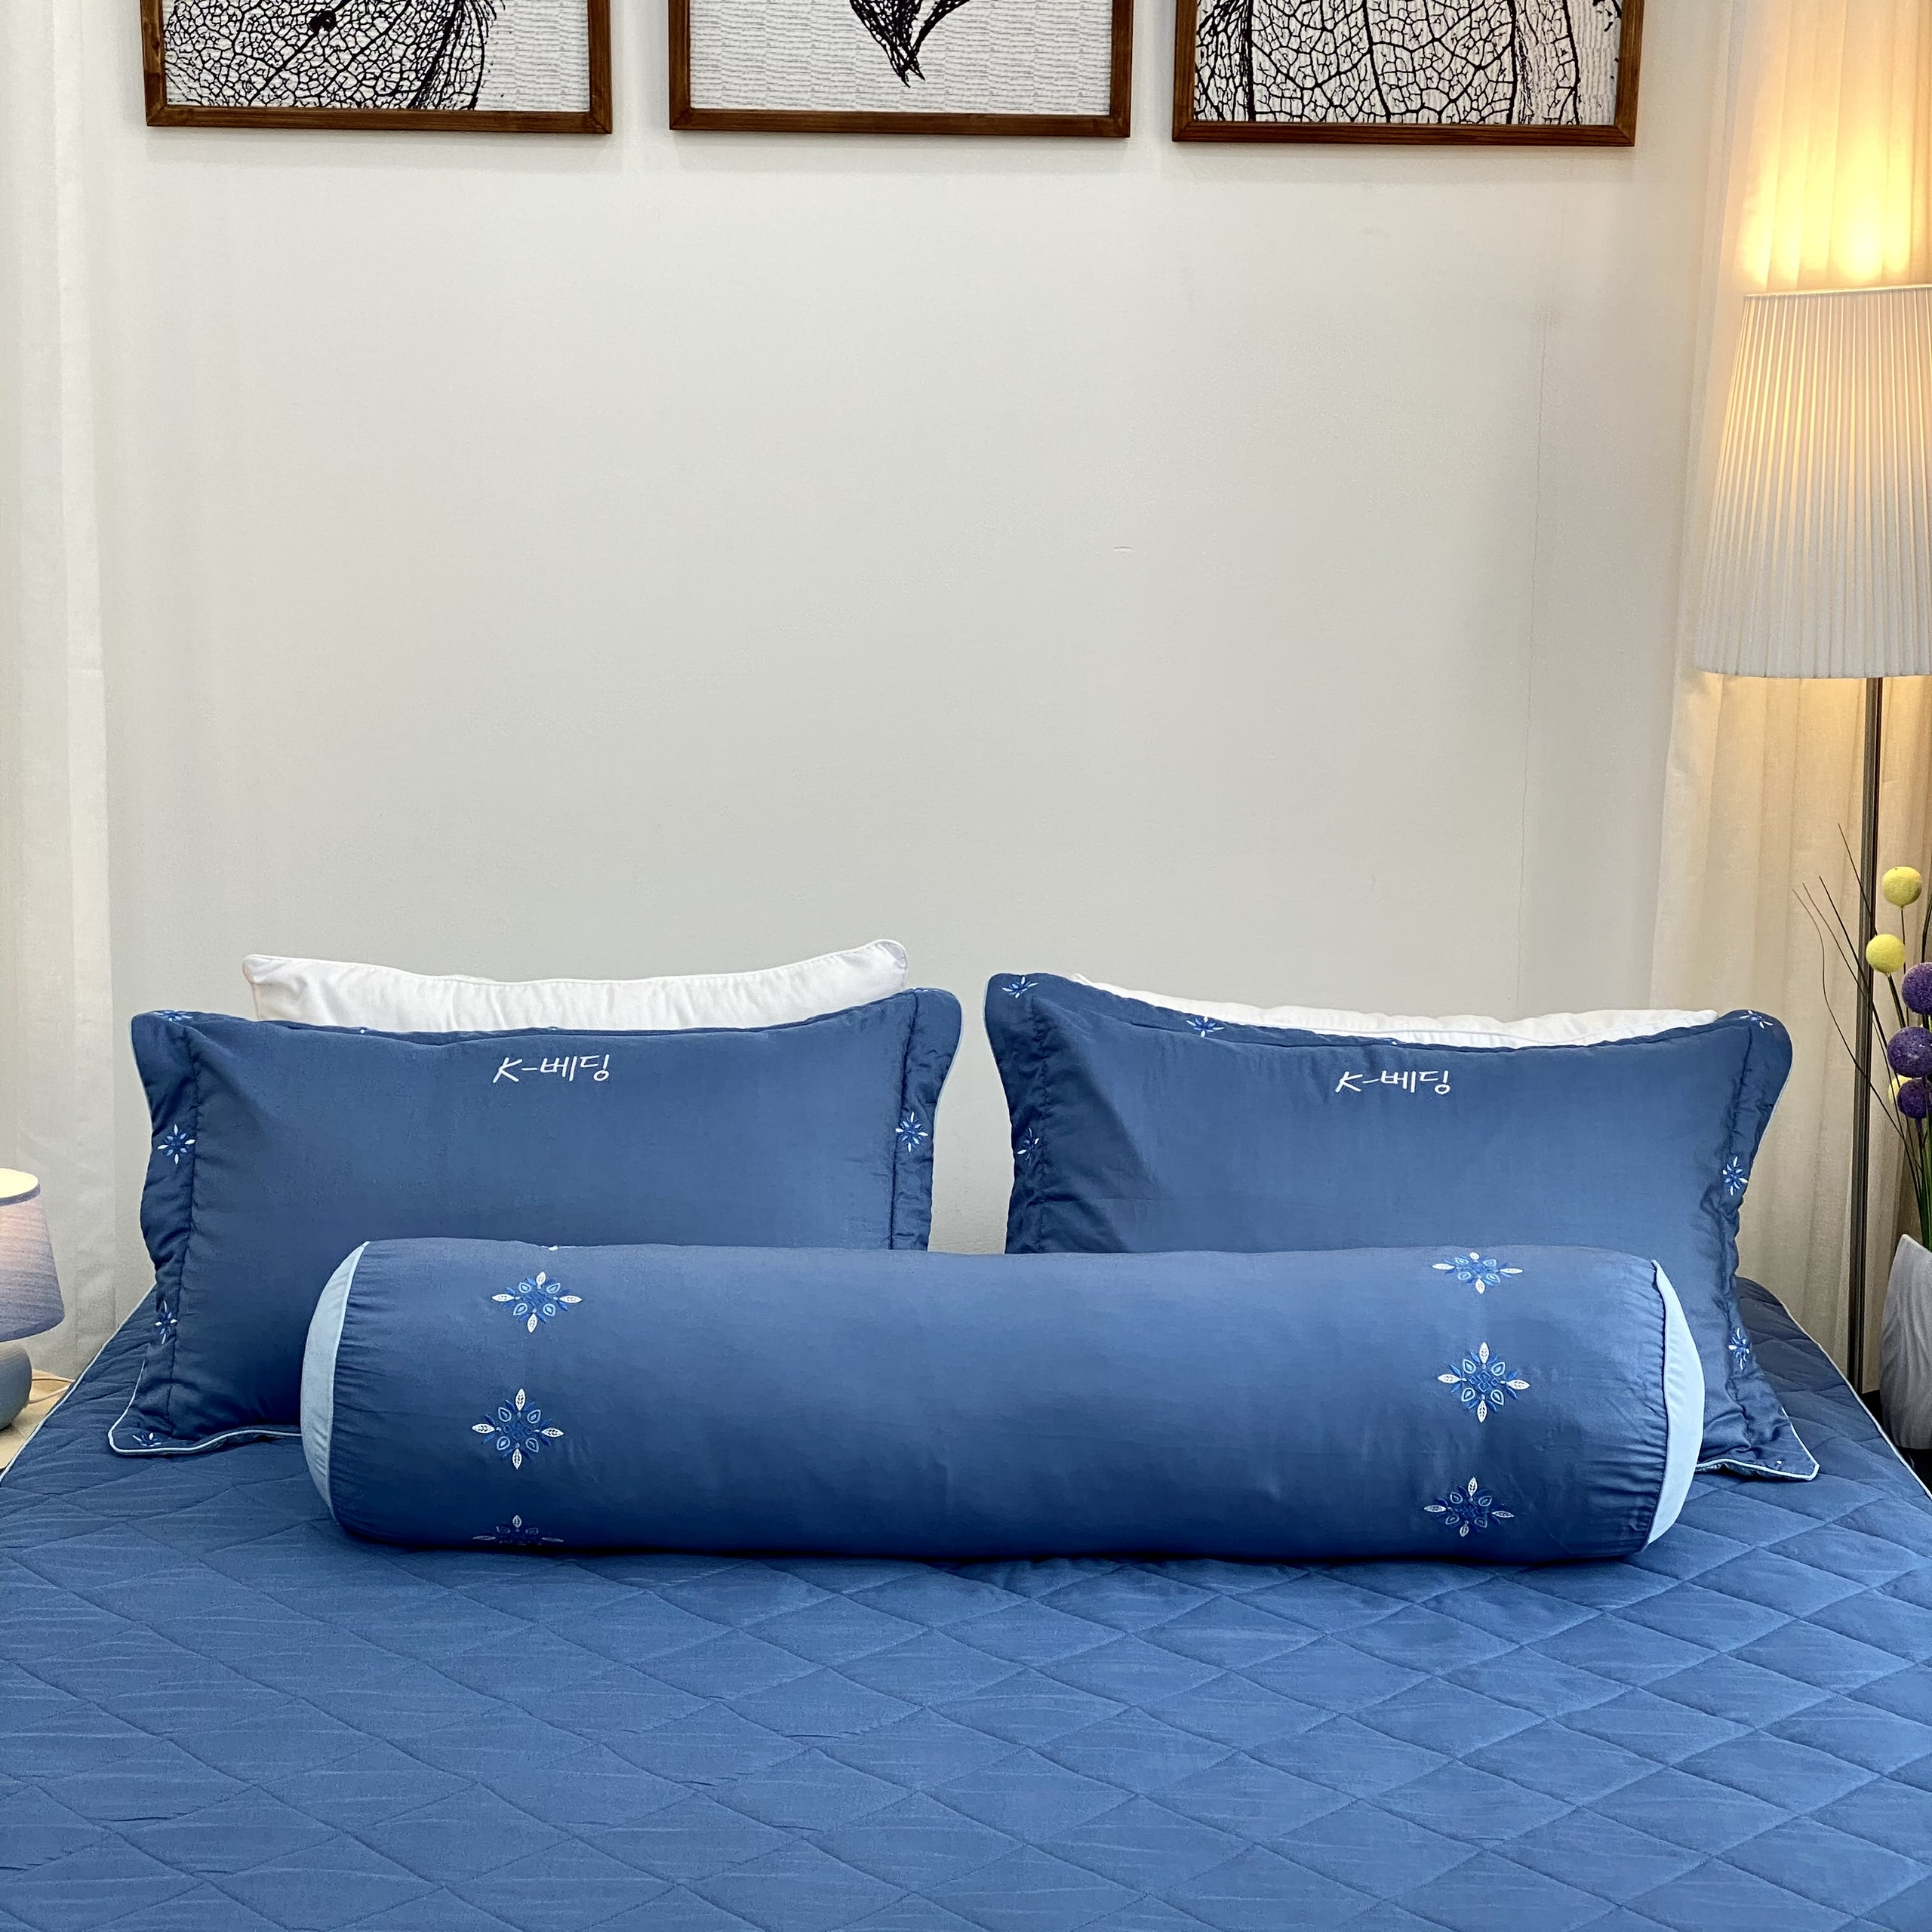 Bộ ga giường chần bông KBedding by Everon KMTS 105 Microtencel Xanh đậm (4 món)